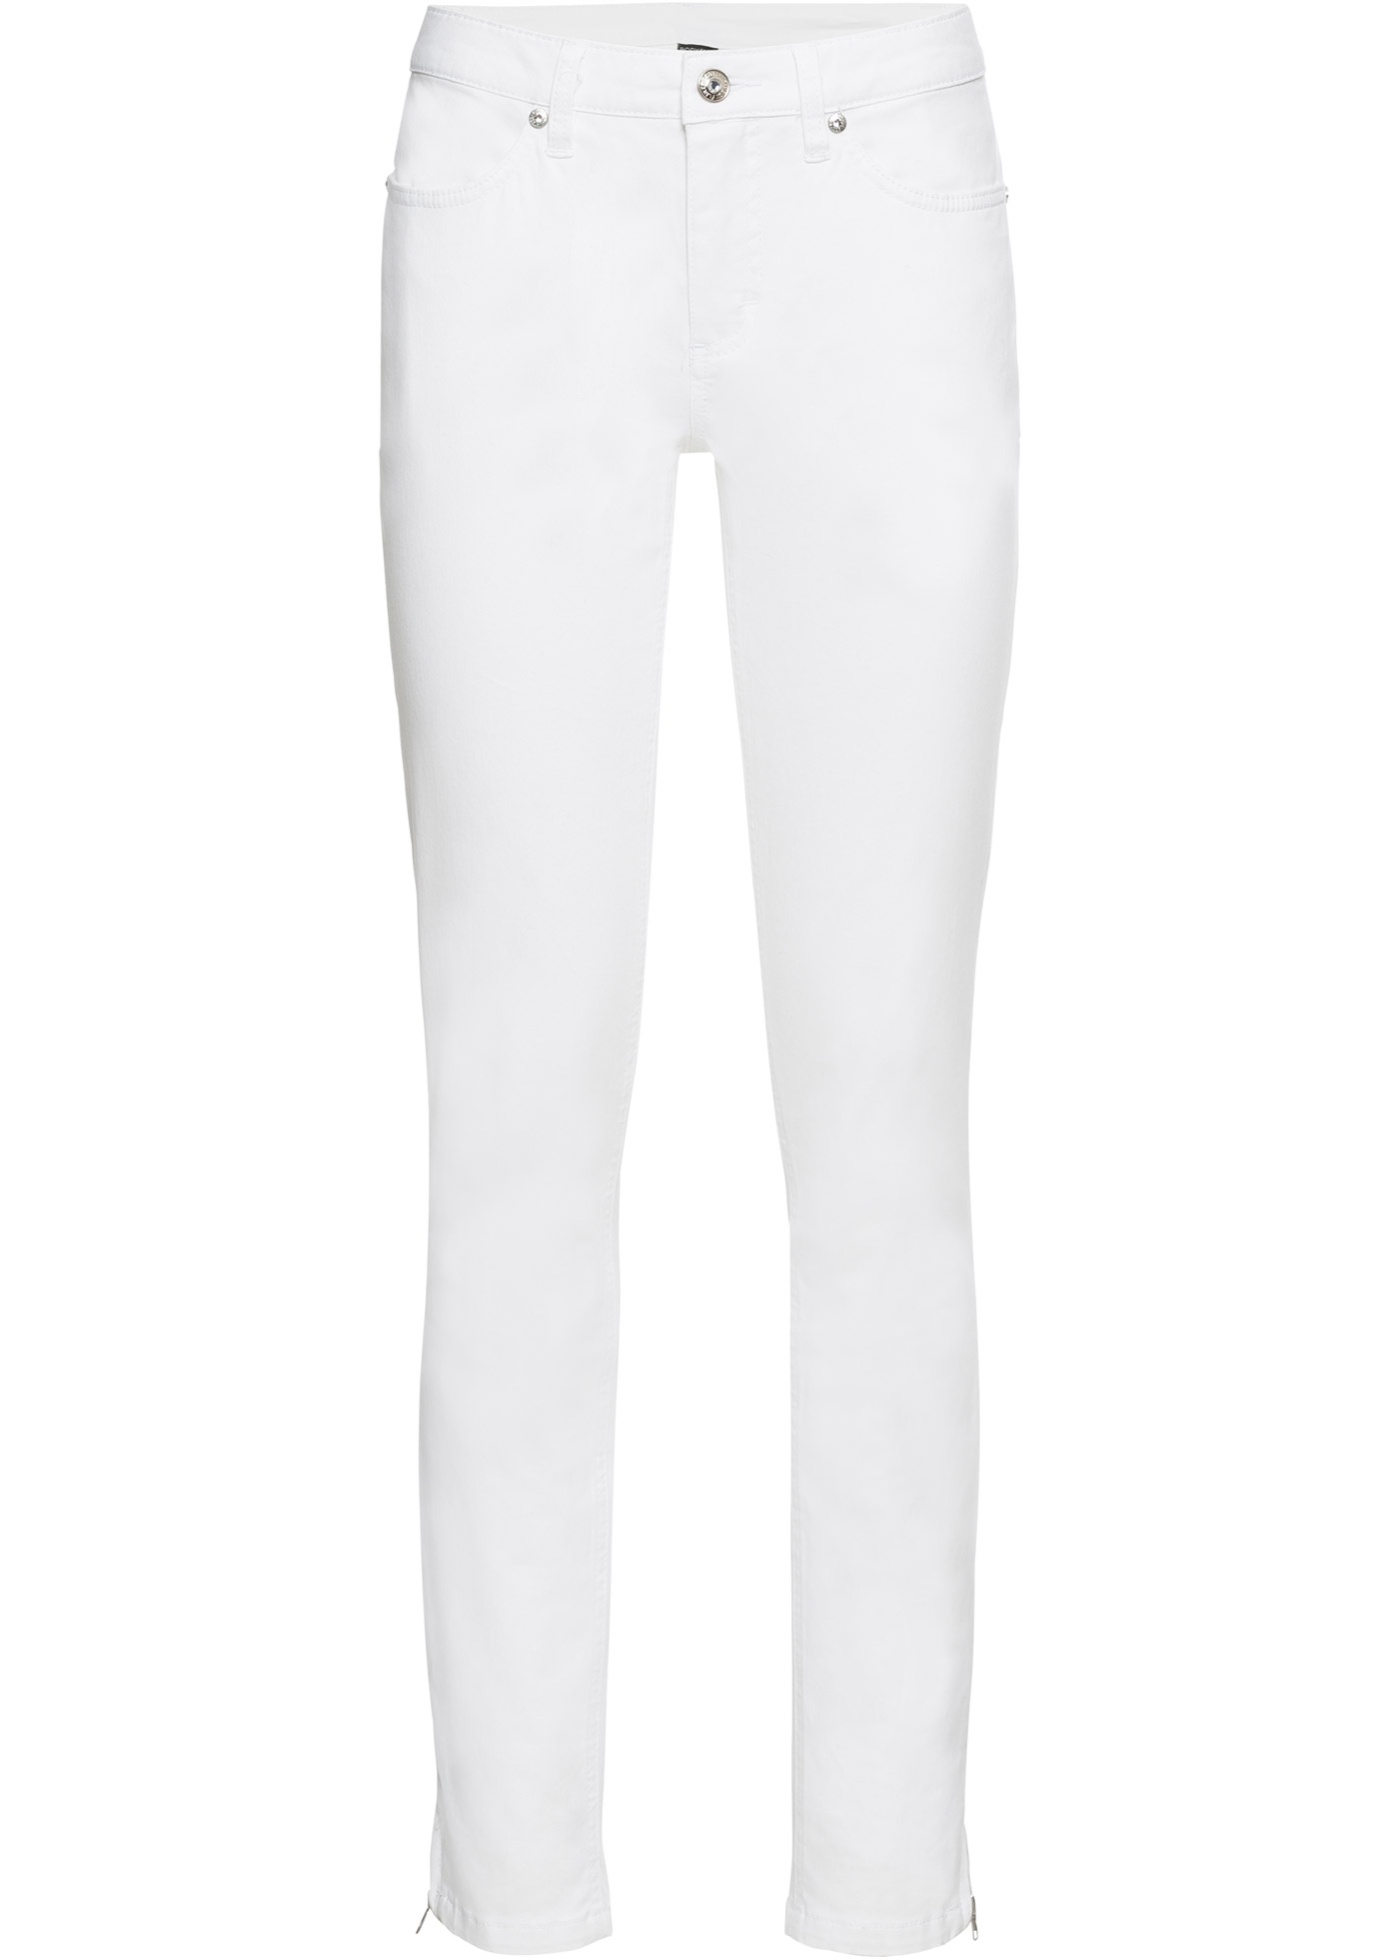 Enganliegende Stretchhose mit Zippern am Saum (93394295) in weiß